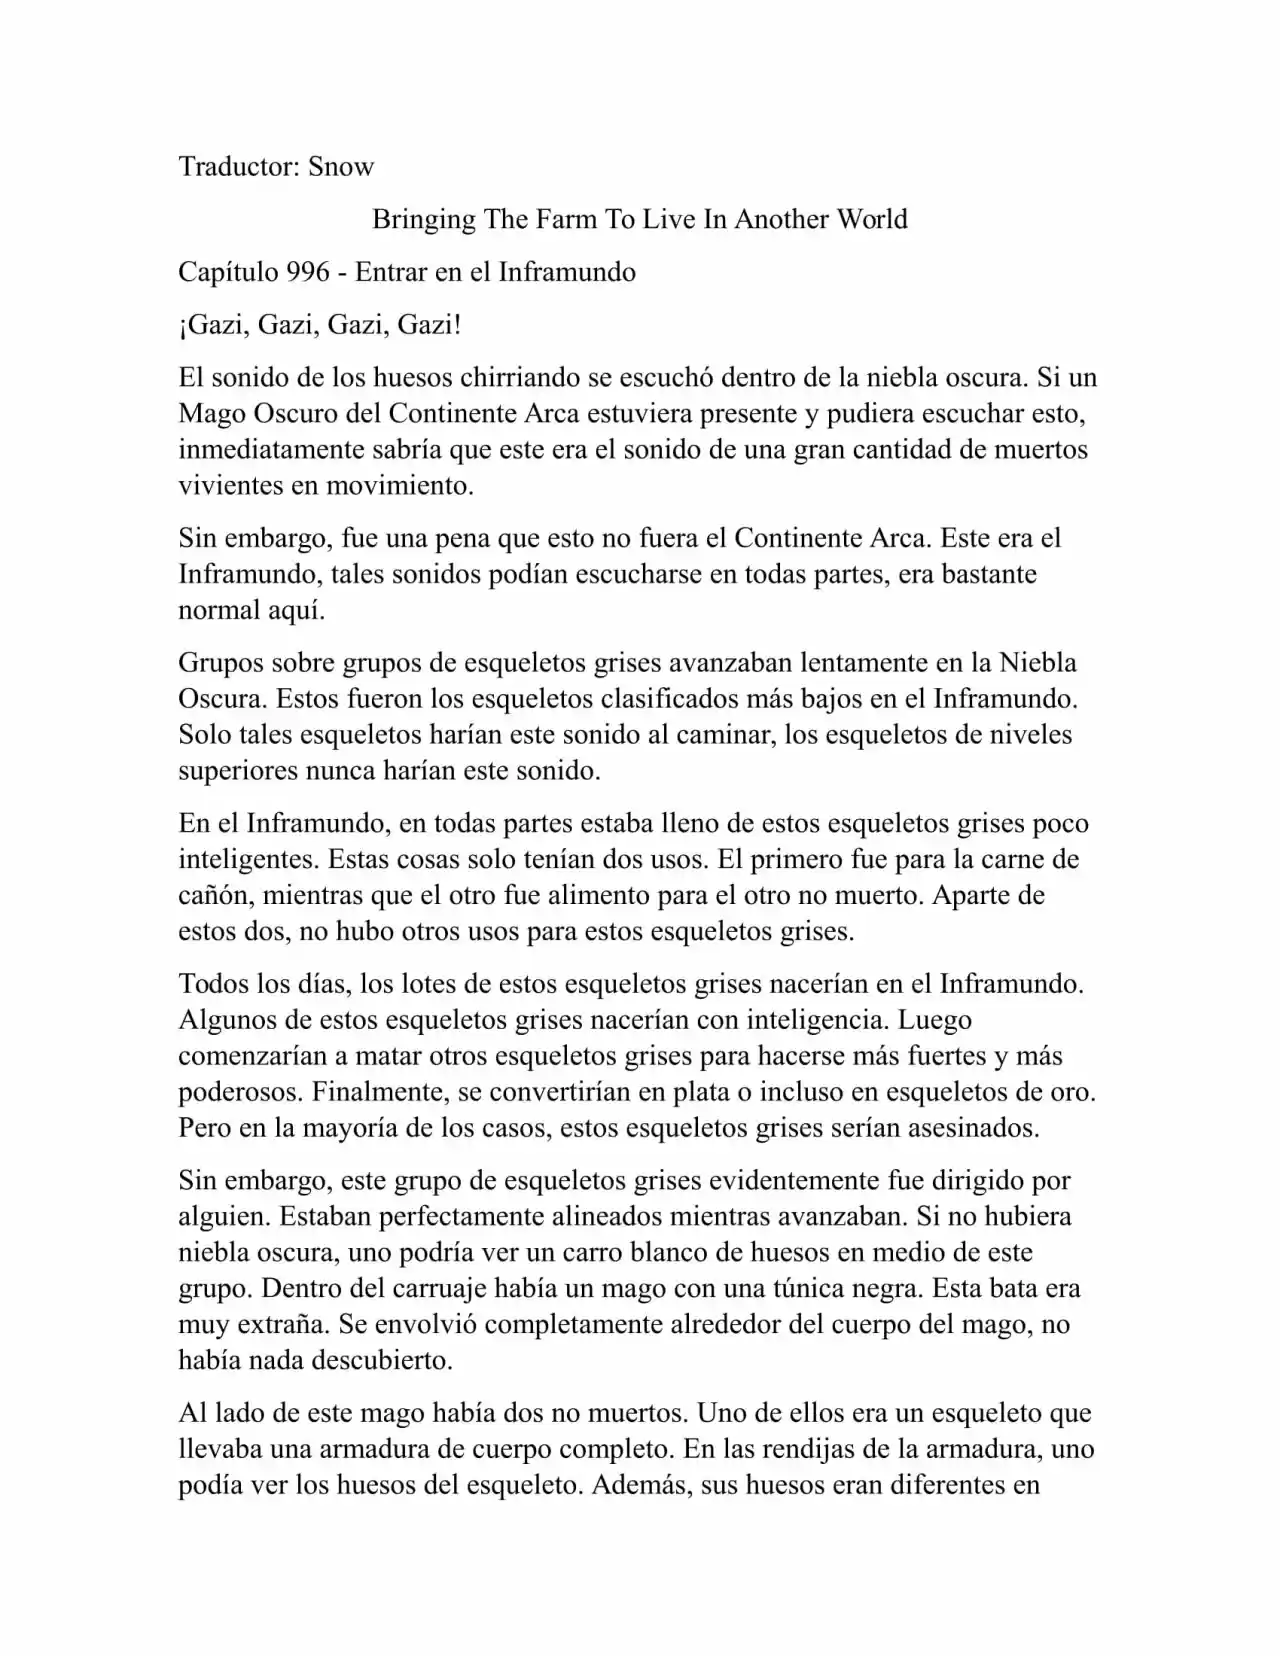 Llevando La Granja Para Vivir En Otro Mundo (Novela: Chapter 996 - Page 1